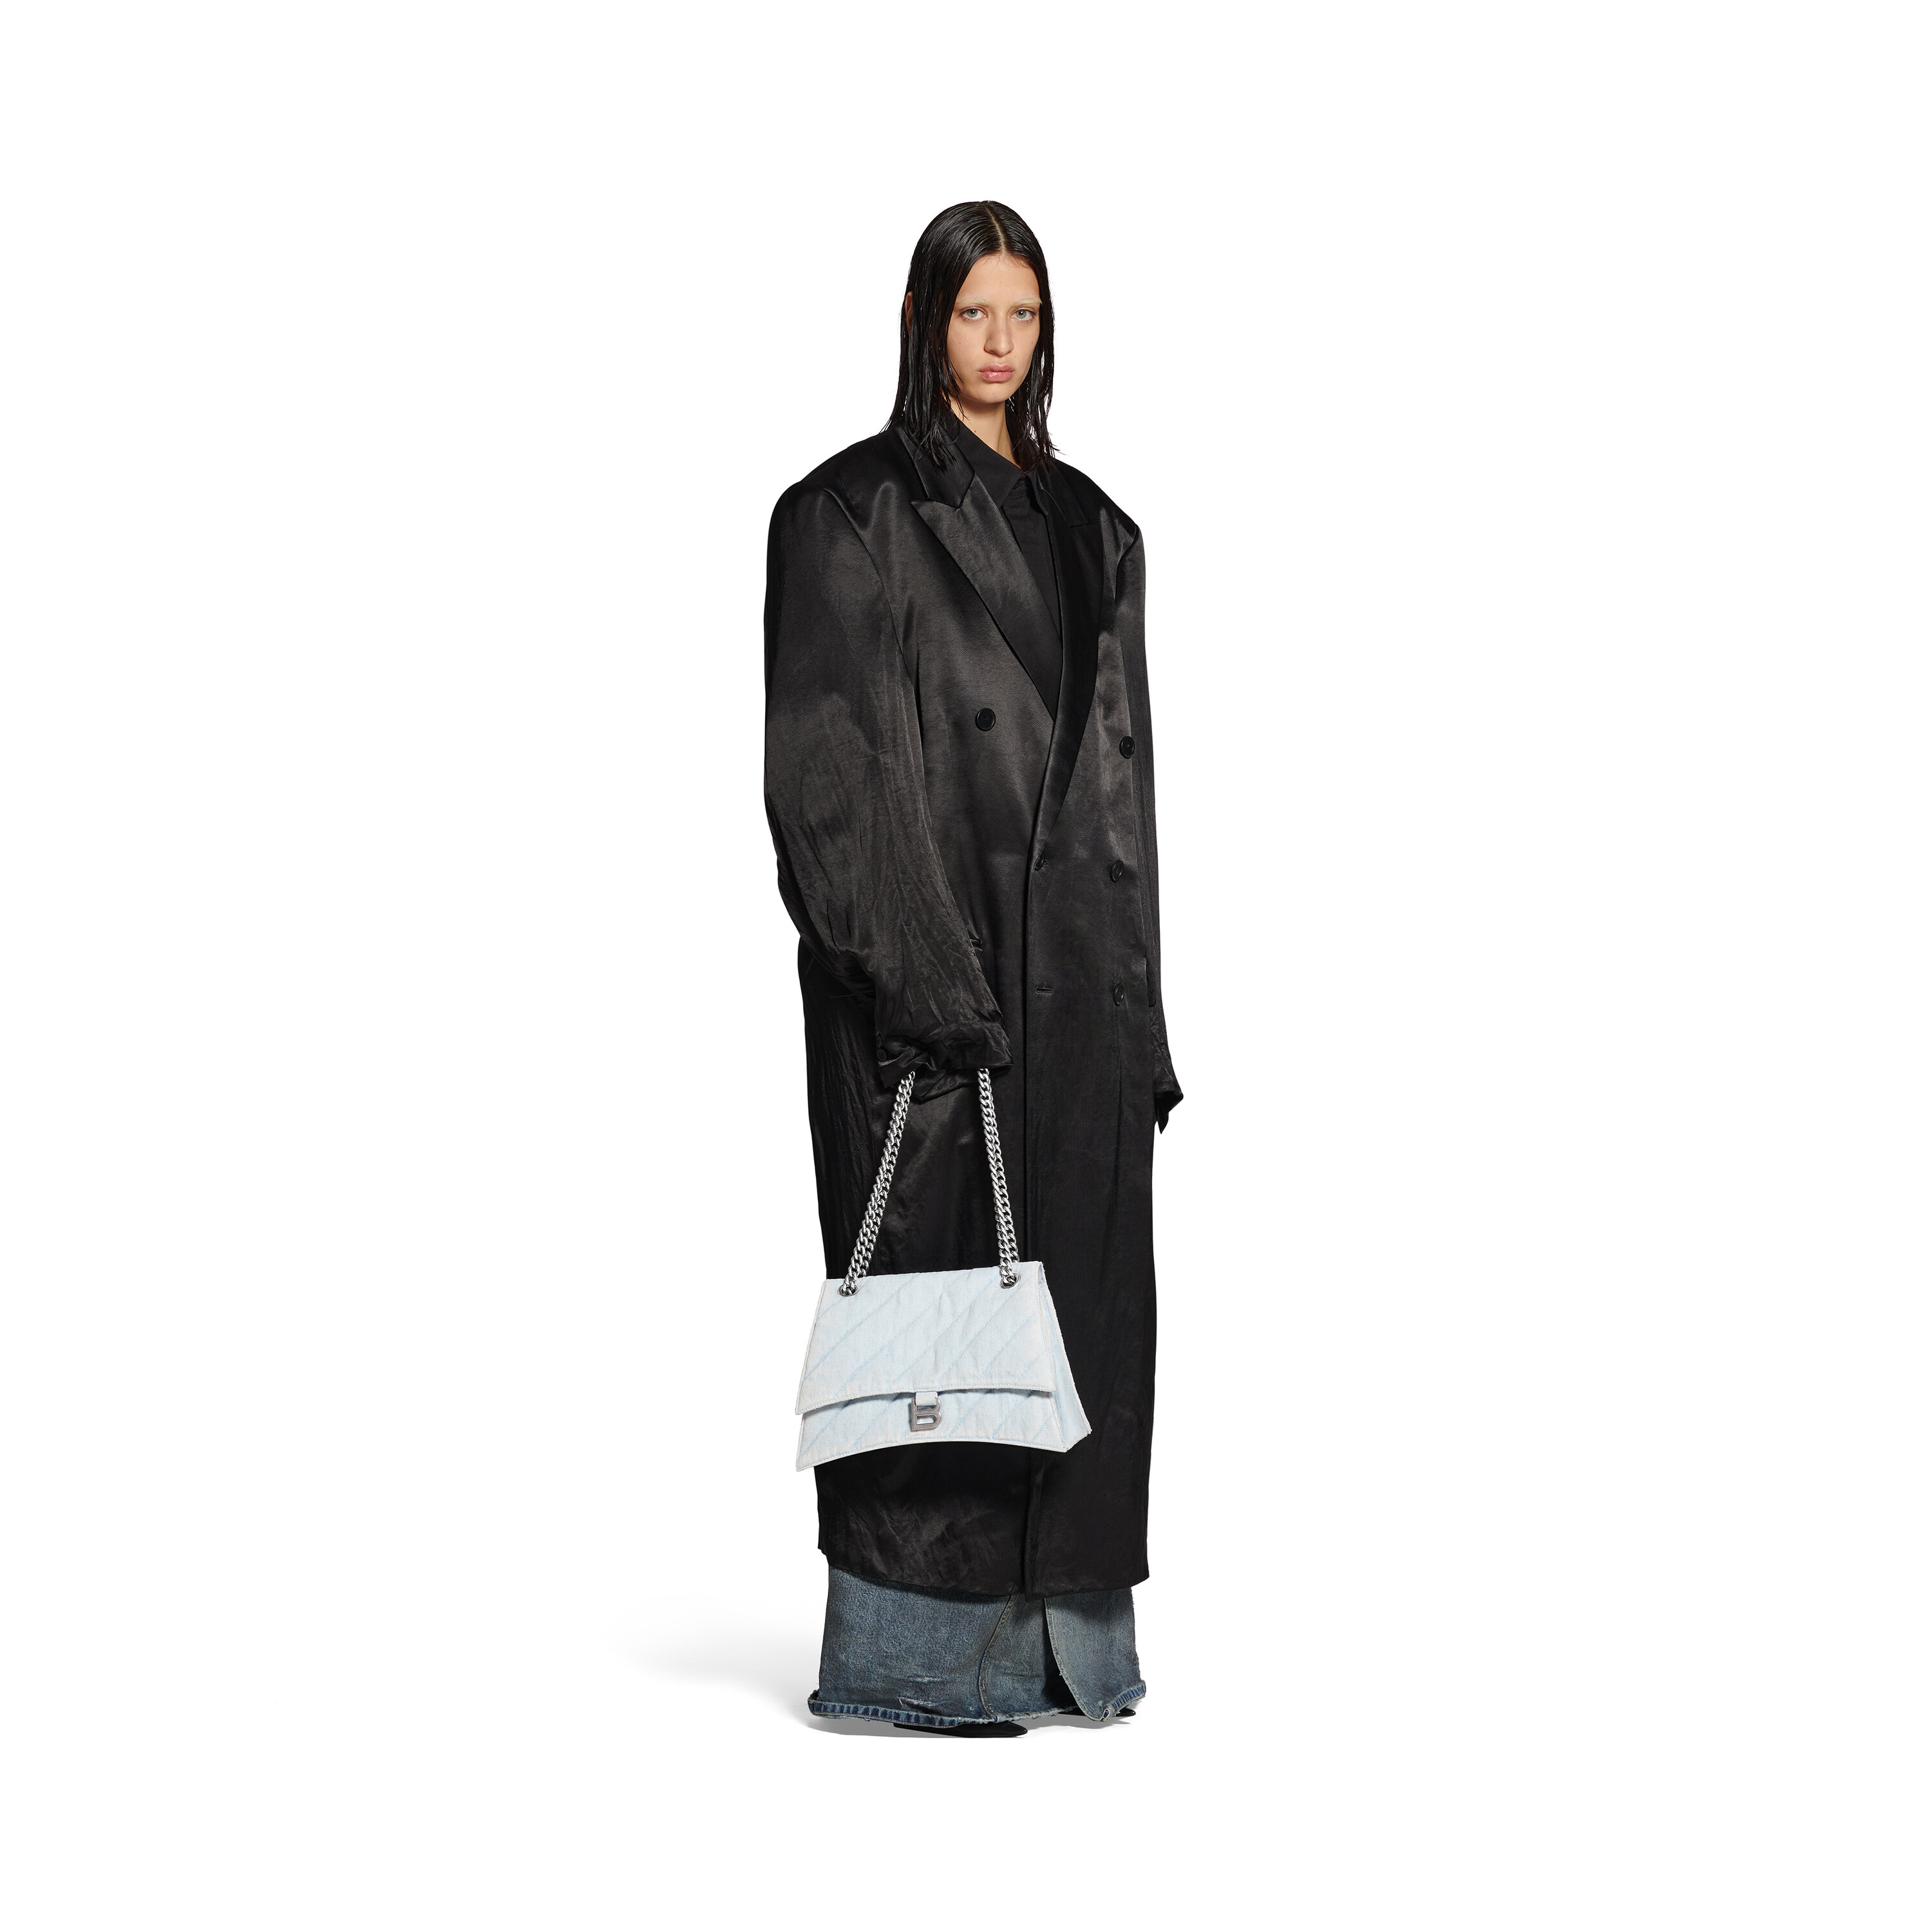 Balenciaga Velvet BB Chain Bag — LSC INC